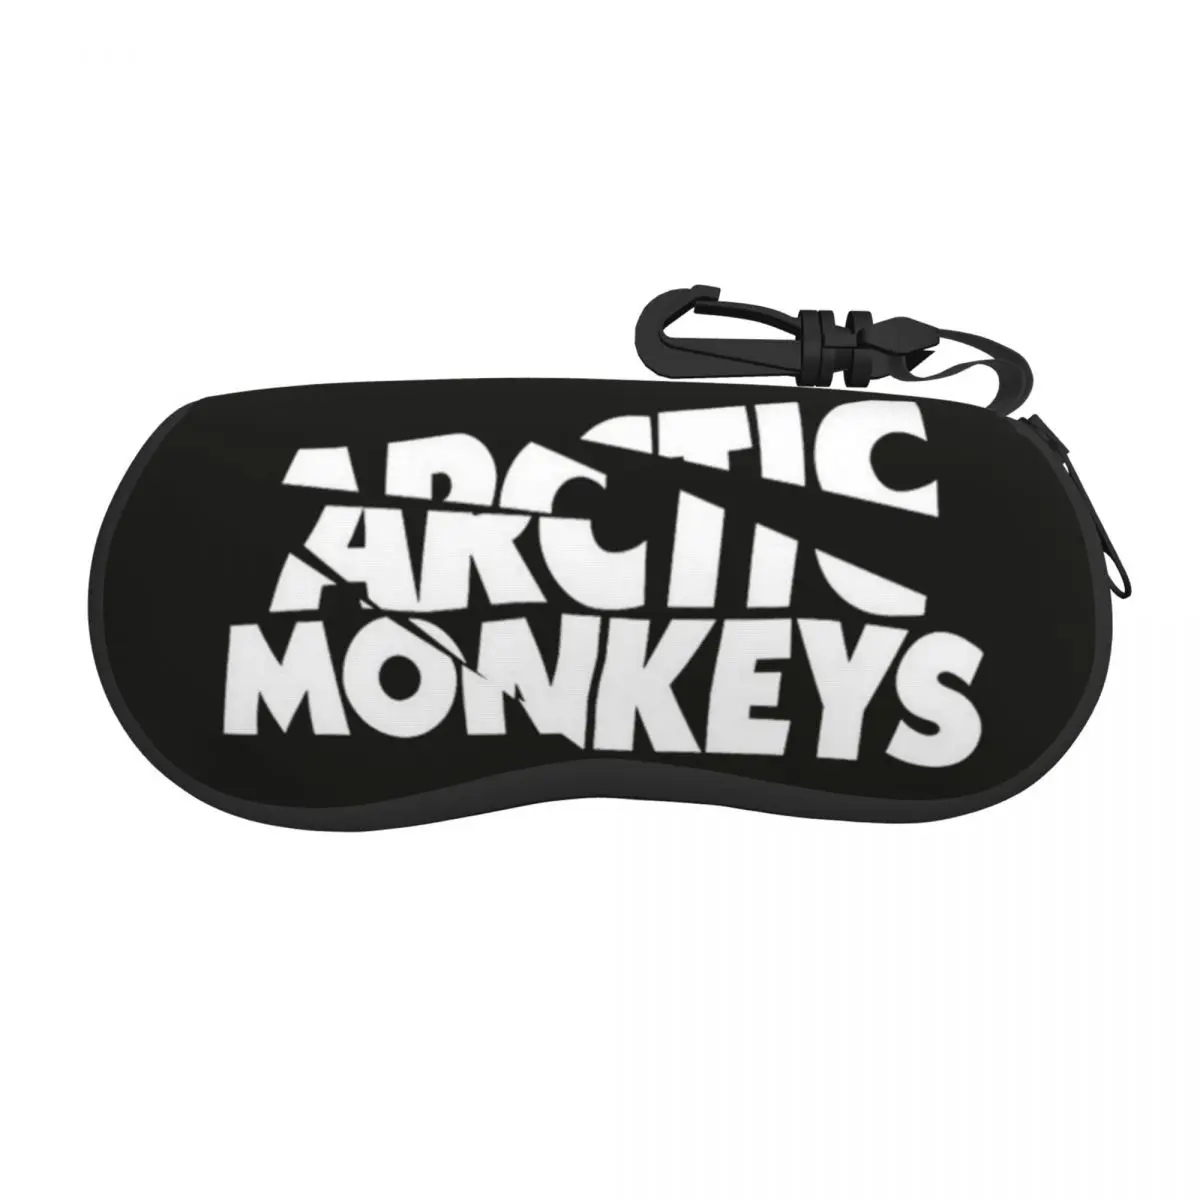 Футляр для очков Arctic Monkey Rock Band, коробка для хранения печатных очков, Офисная коробка для солнцезащитных очков